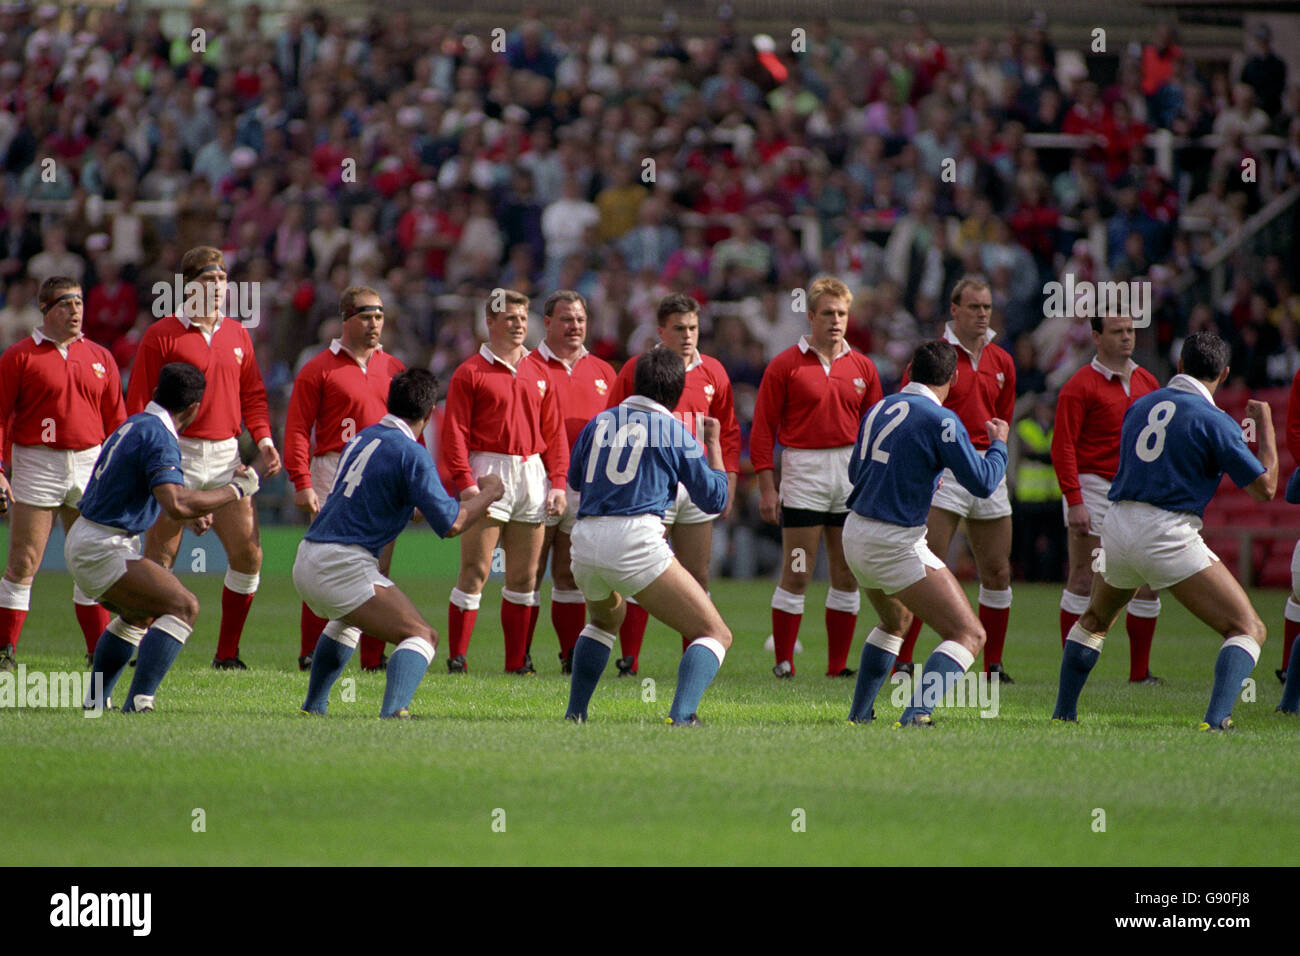 Rugby Union - Copa Mundial 1991 - Grupo 3 - Gales contra Samoa Occidental. Samoa Occidental realiza el Manu, su versión del Haka, antes del partido. Foto de stock